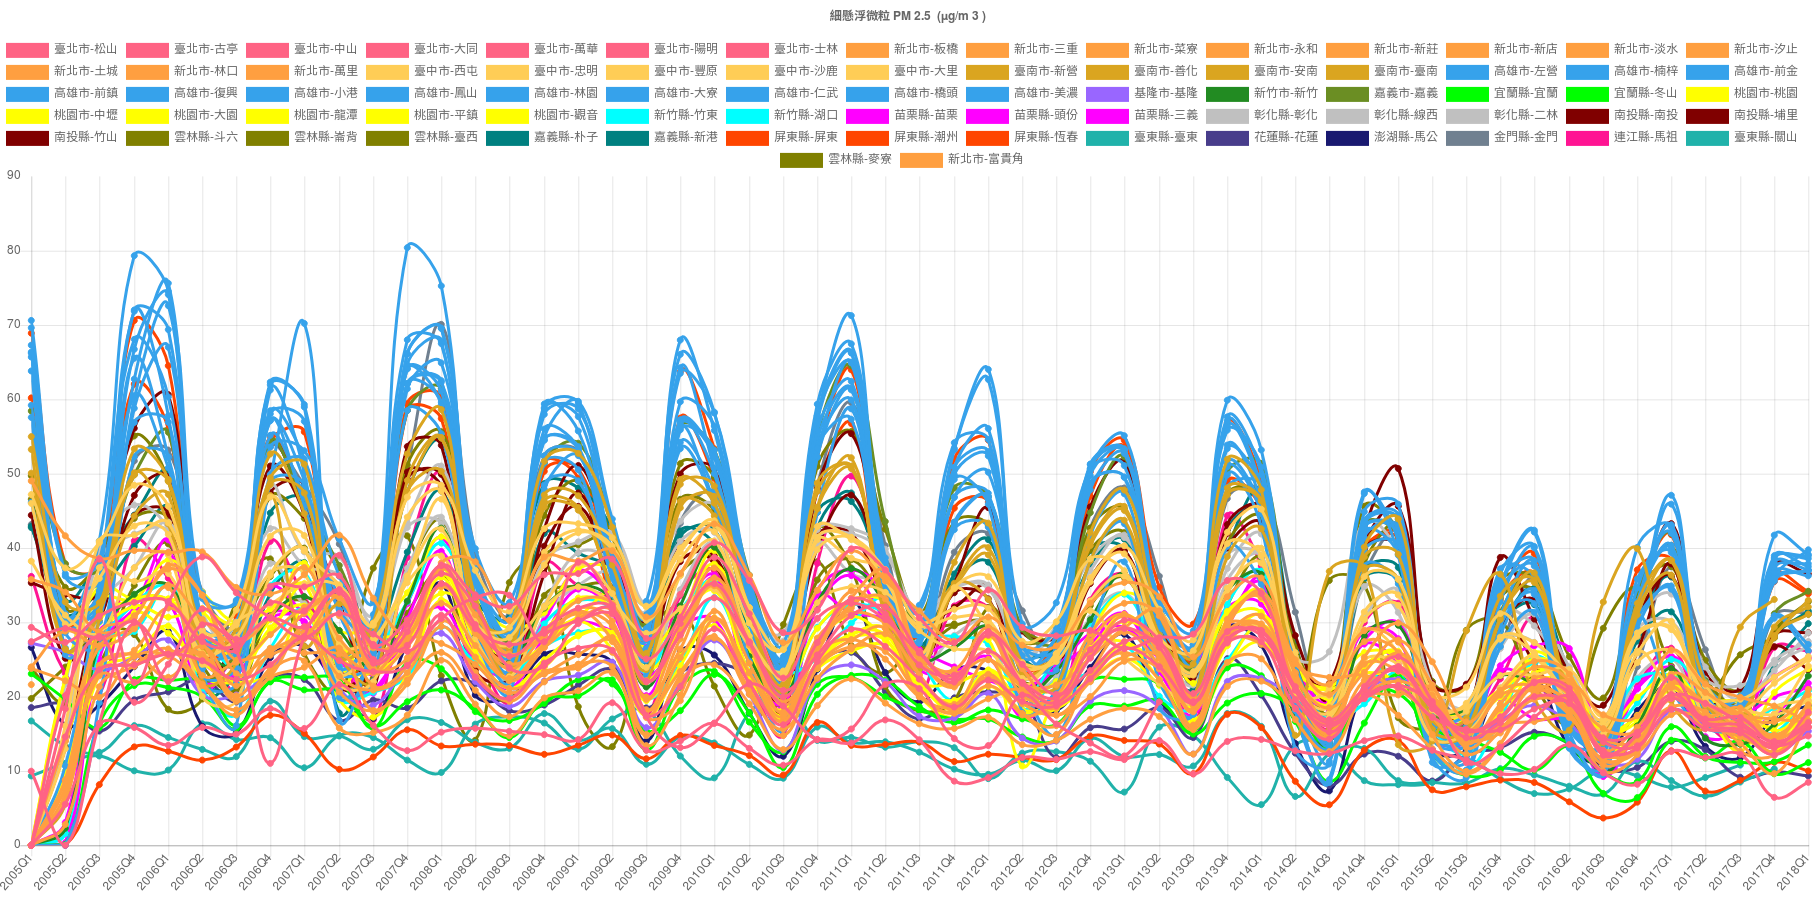 測站空氣品質季平均統計圖